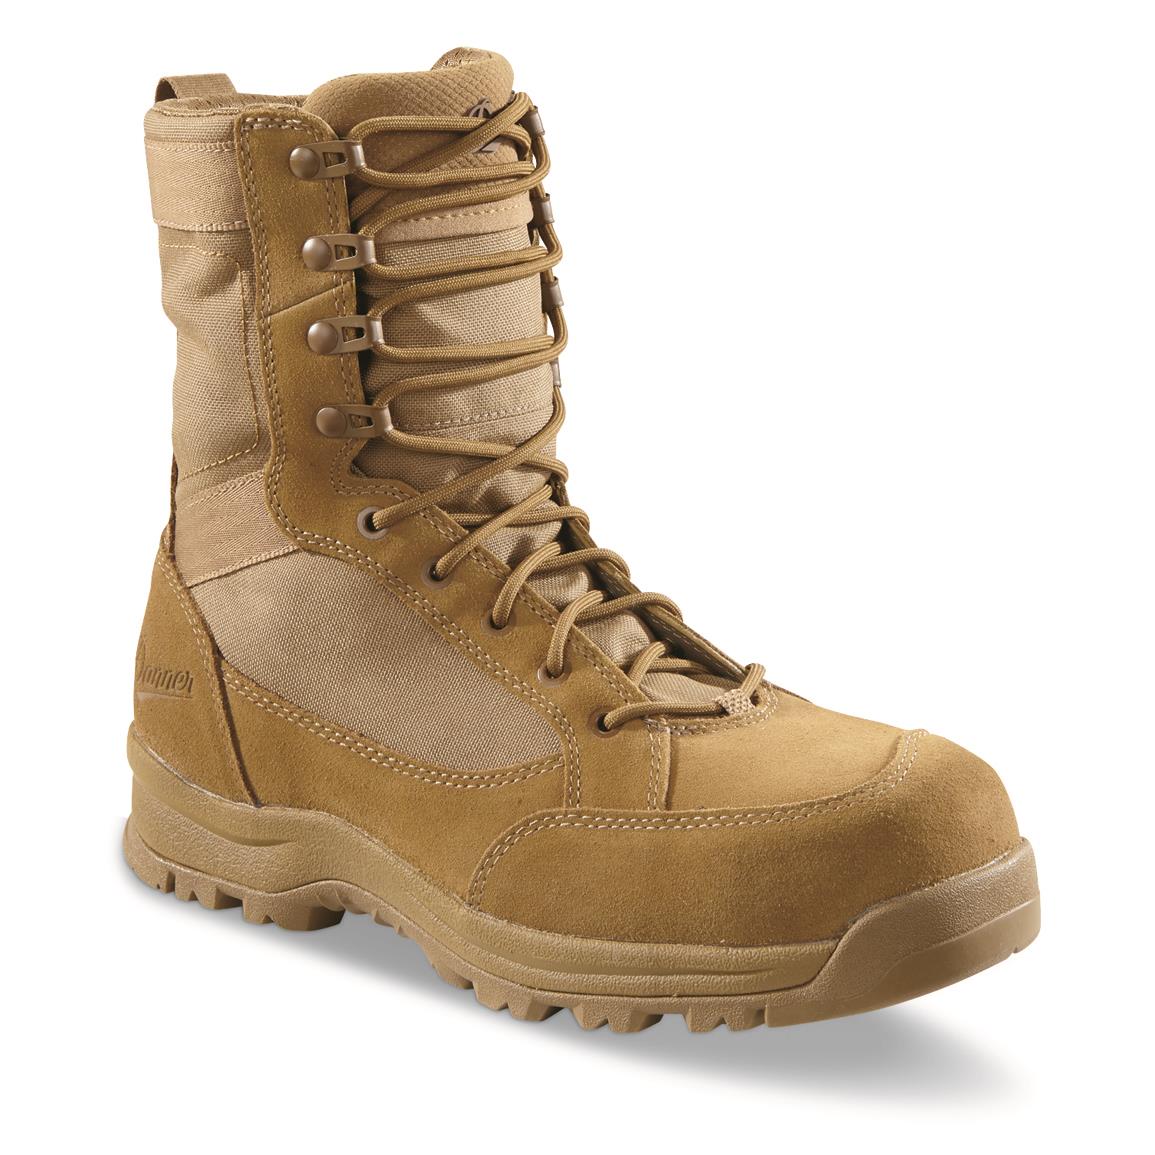 Danner Men's Tanicus 8" Side-Zip Composite Toe Tactical Boots, Coyote